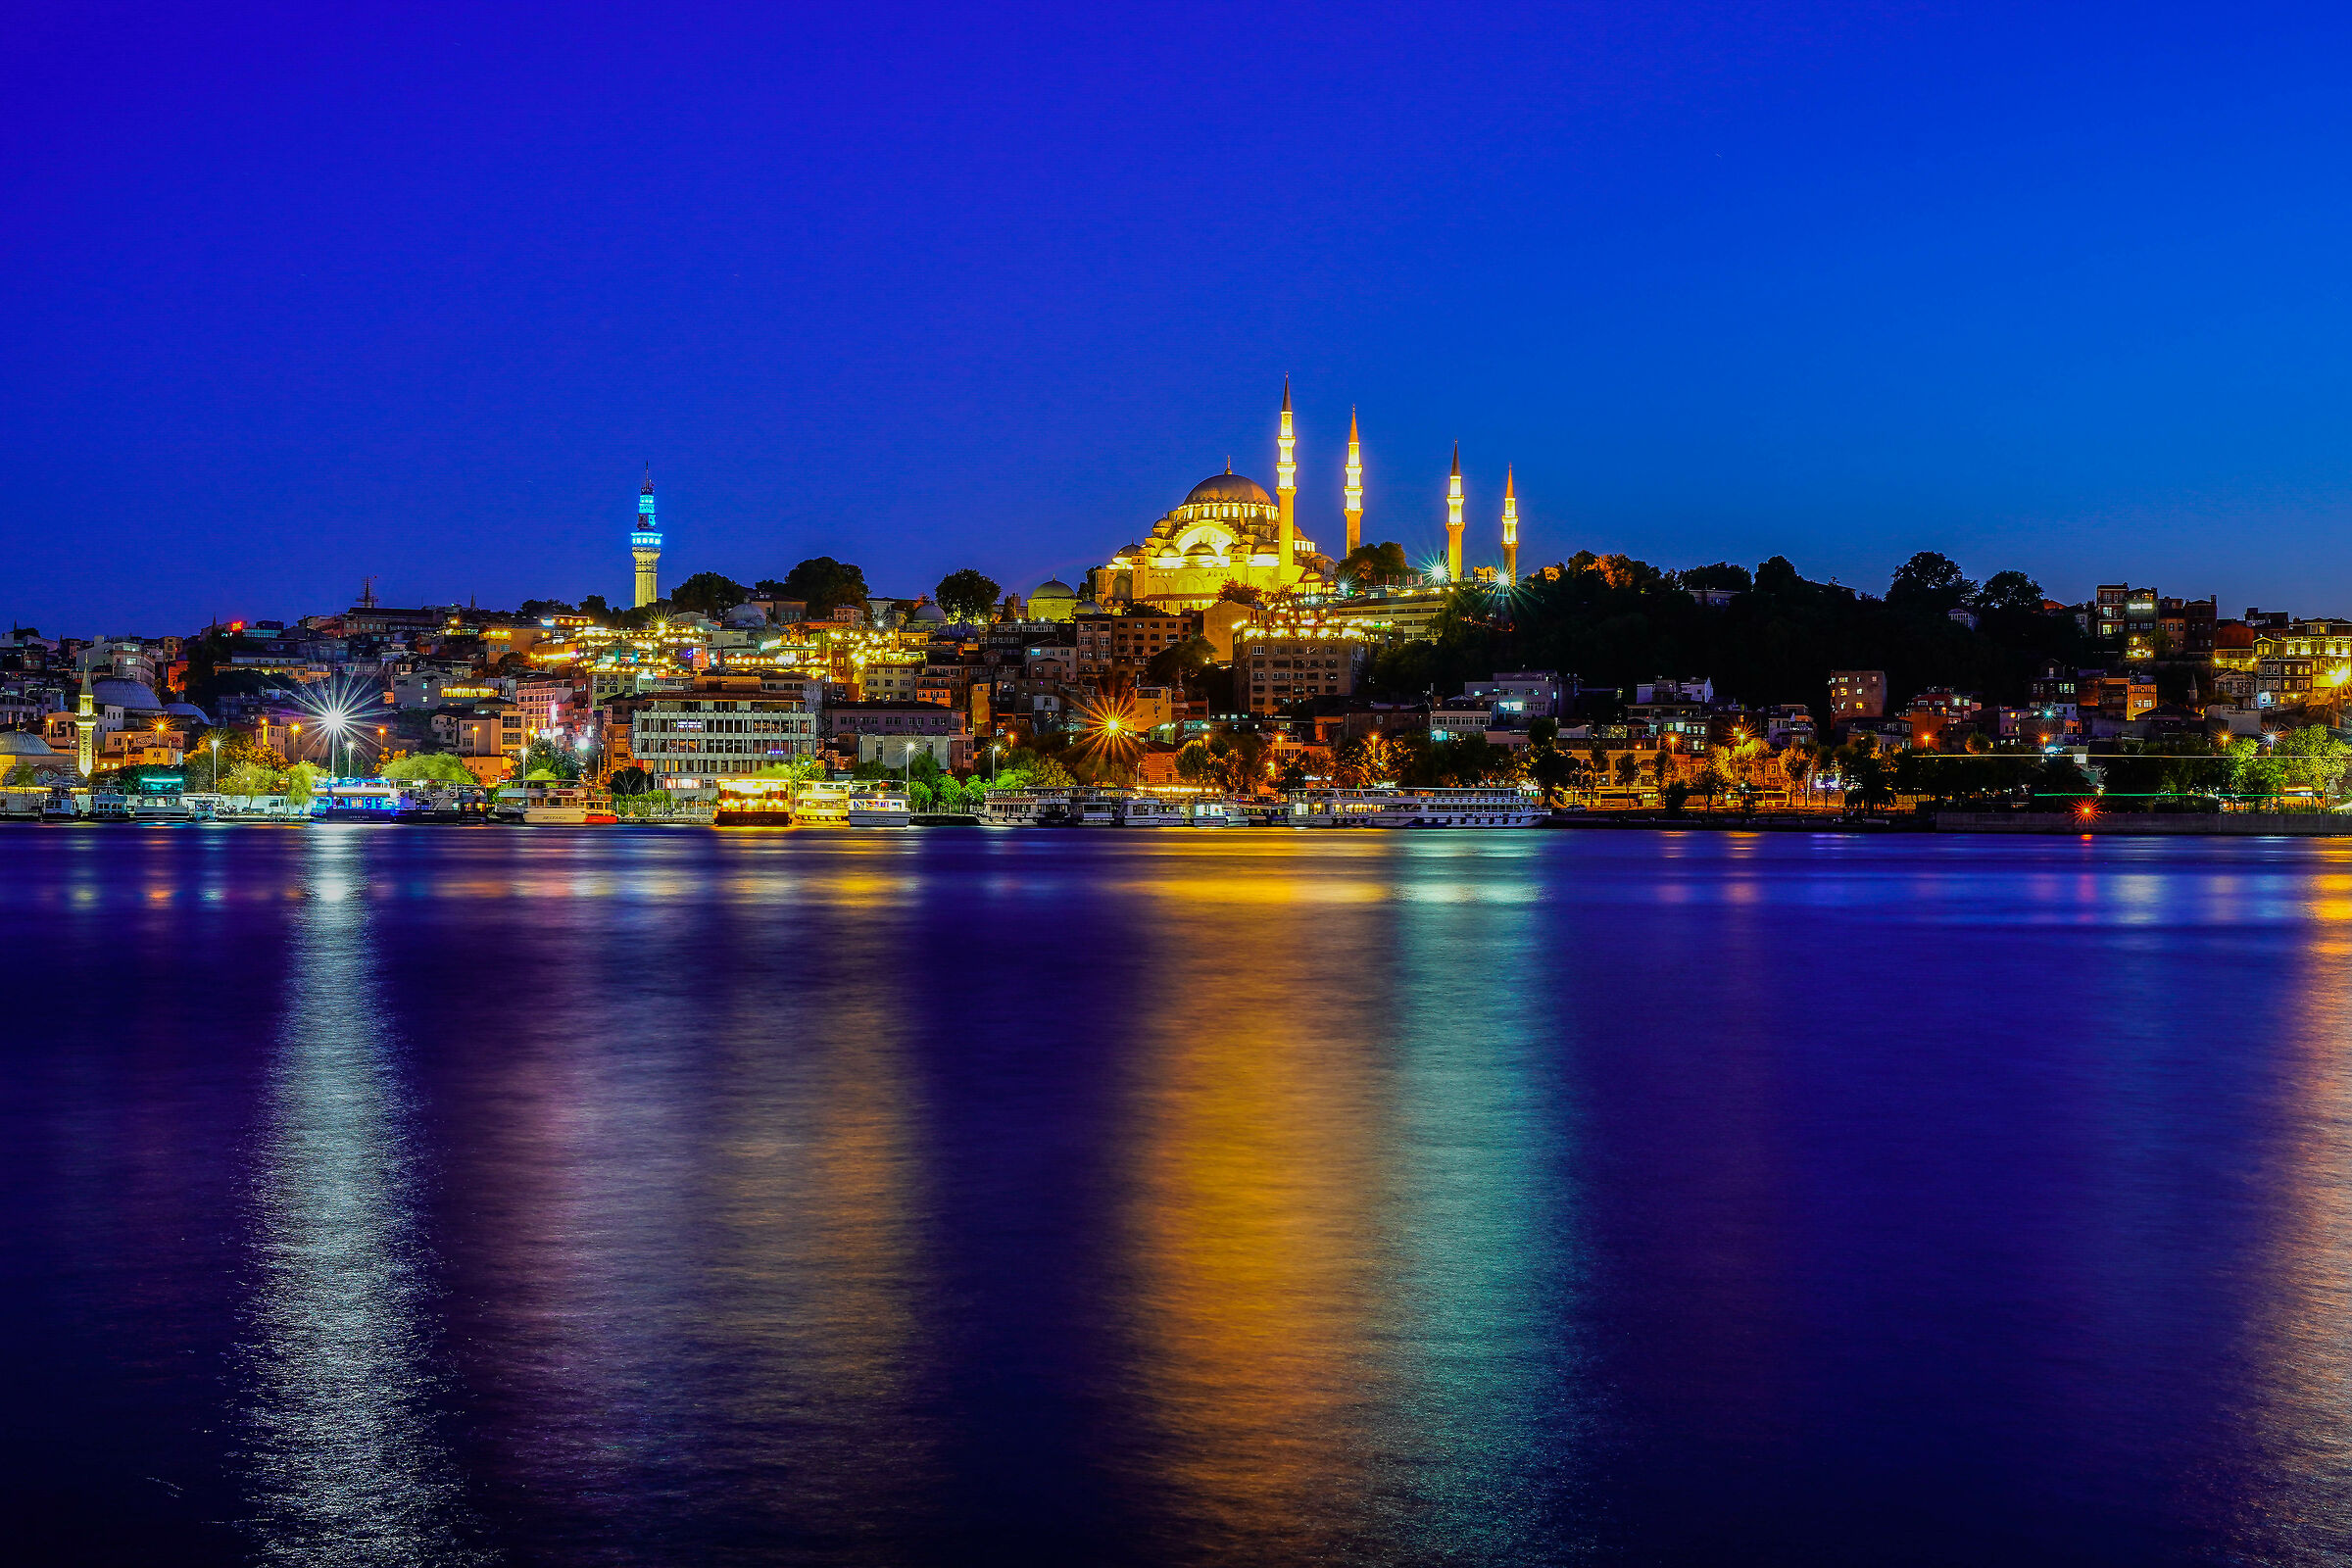 Una notte d'estate ordinaria a Istanbul...